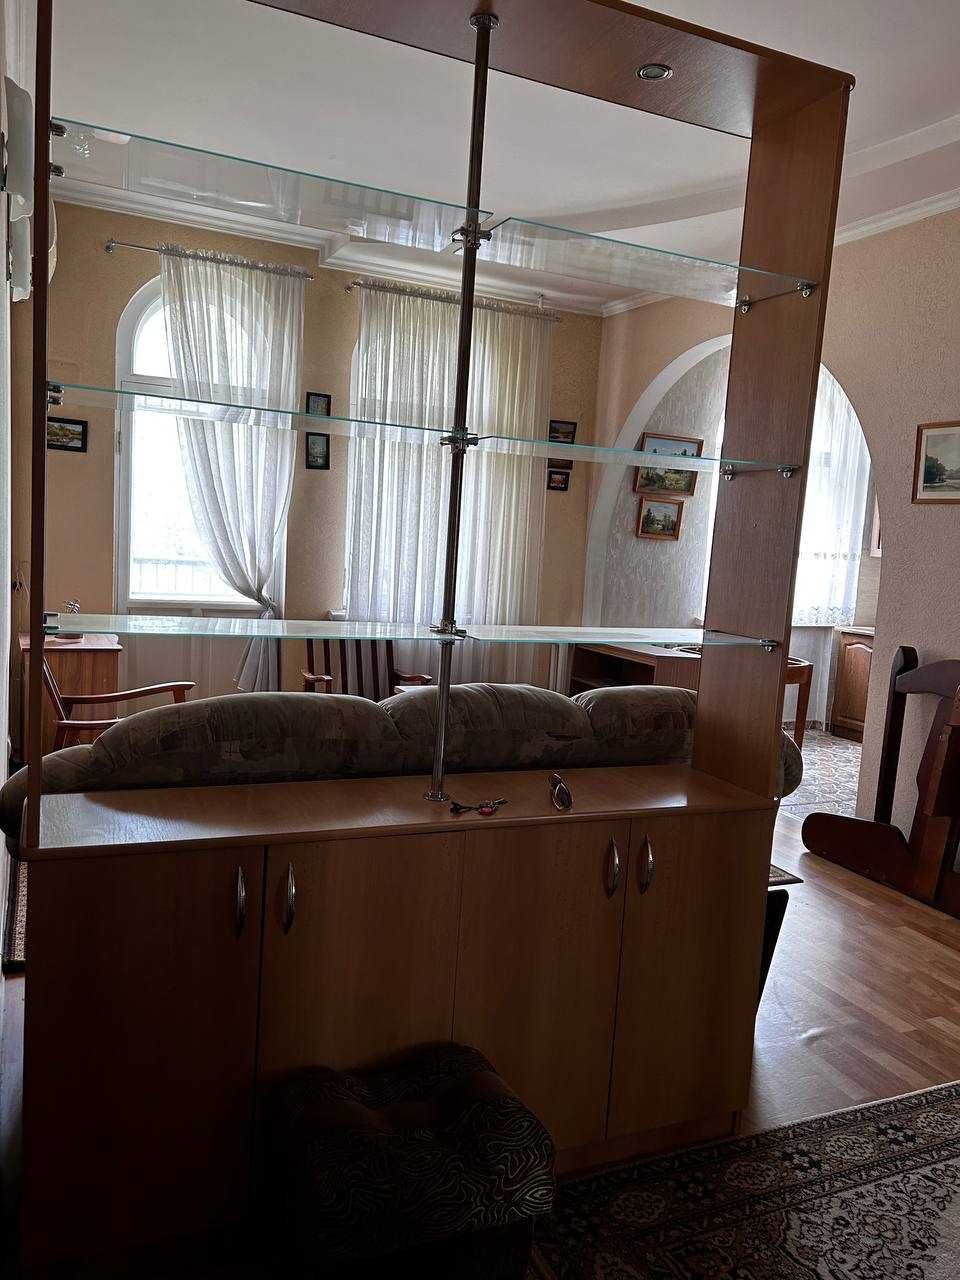 Продажа 2-х комнатной квартиры в Центре города (Харитонова) сталинка